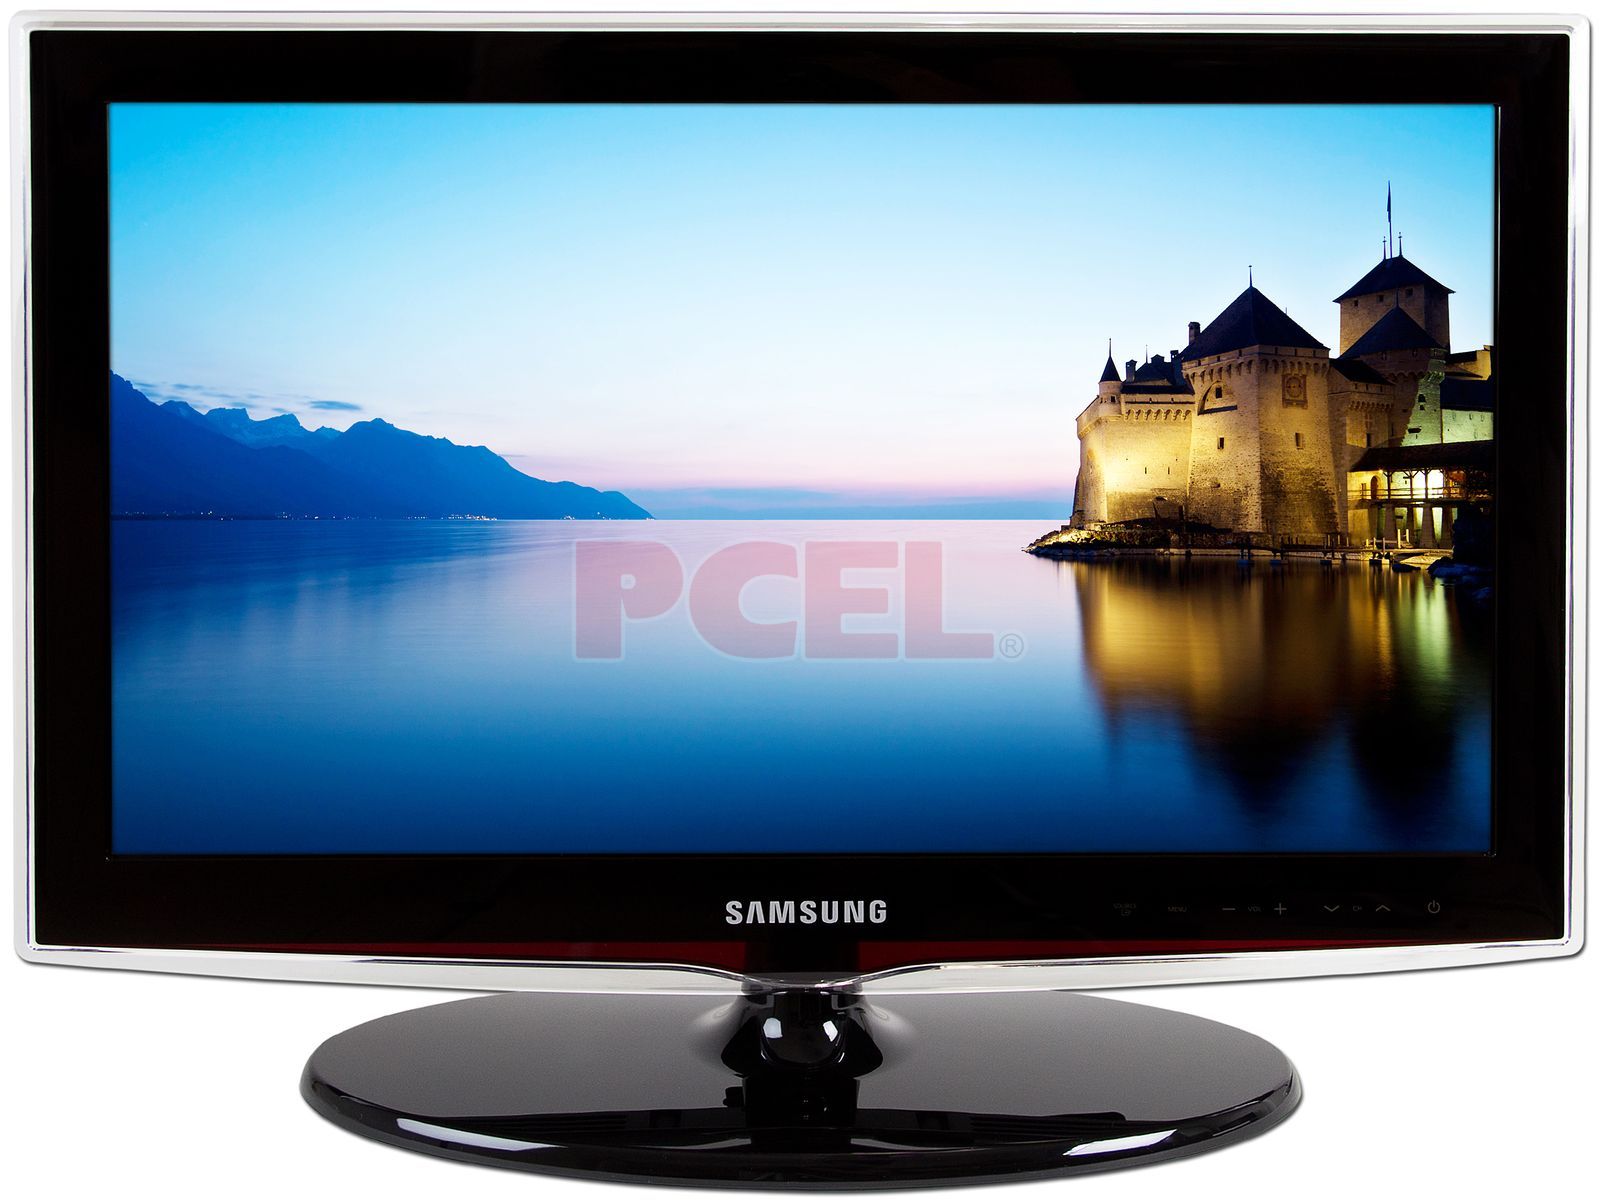 Televisión LCD Samsung Modelo: LN22D450 Widescreen 22, HDTV, Full HD 1080p.